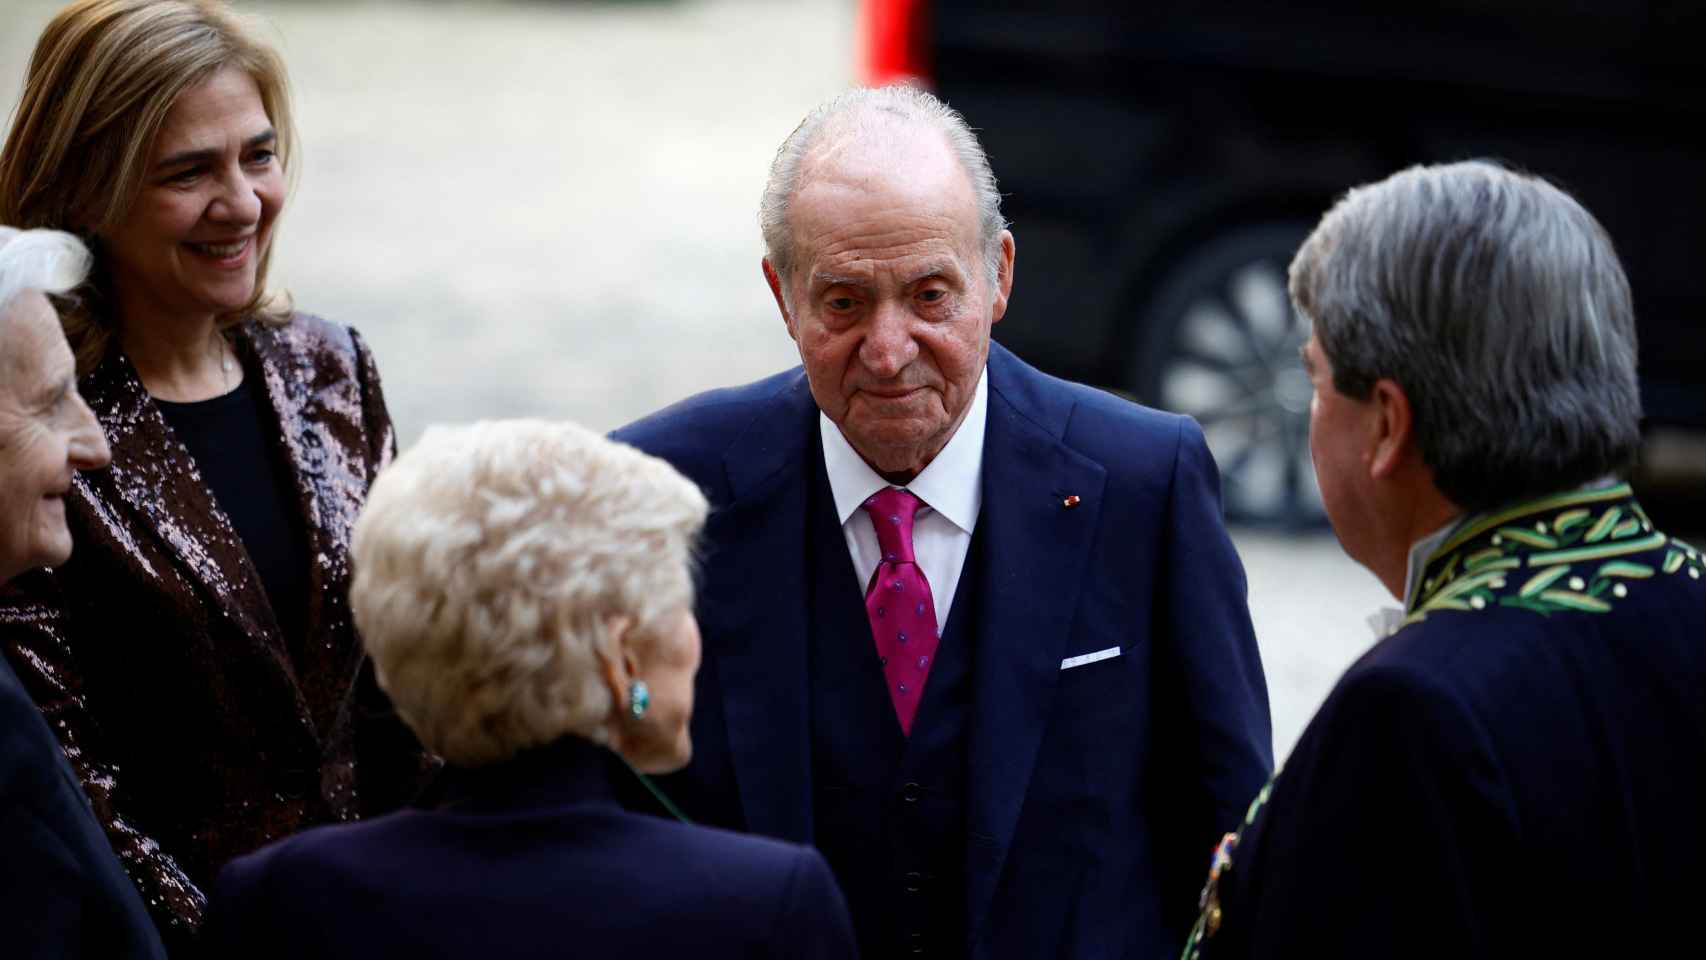 El rey emérito Juan Carlos I, junto a la infanta Cristina, a su llegada a la ceremonia de ingreso de Mario Vargas Llosa en la Academia Francesa. Foto: Sarah Meyssonnier/Reuters